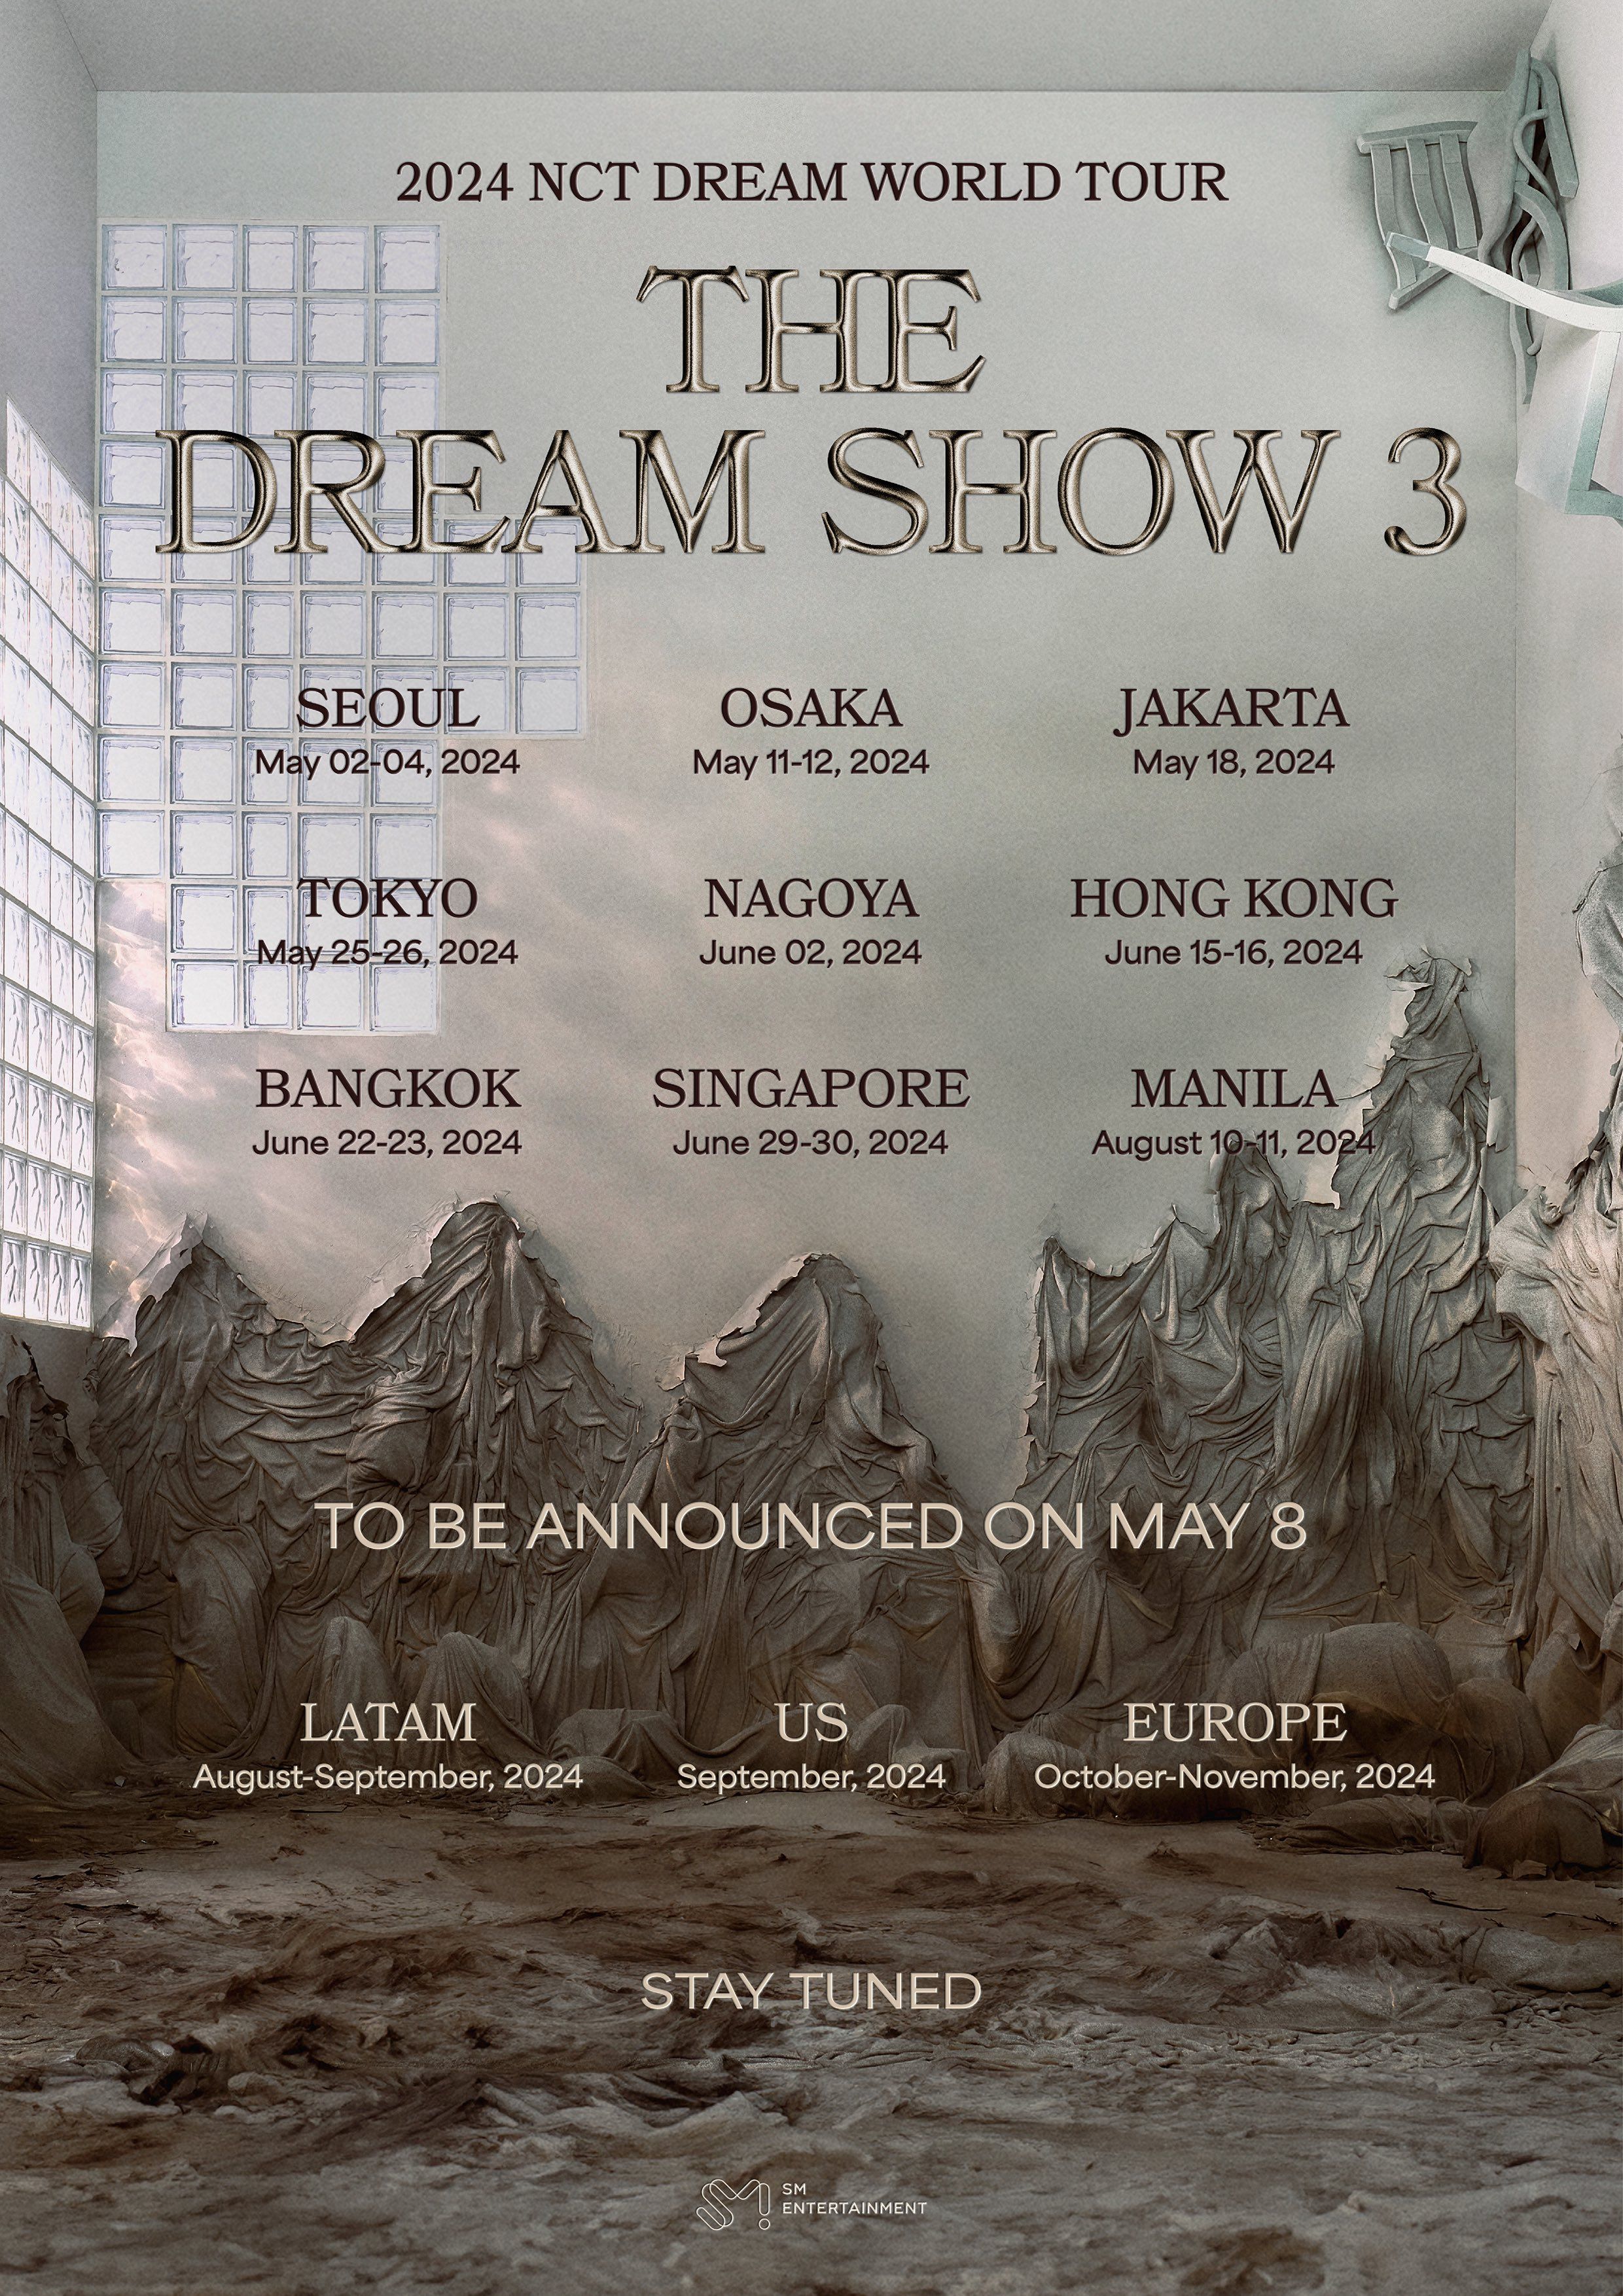 NCT DREAM Umumkan Jadwal Tur Dunia Mereka Tahun Ini yang Bertajuk 'THE DREAM SHOW 3'